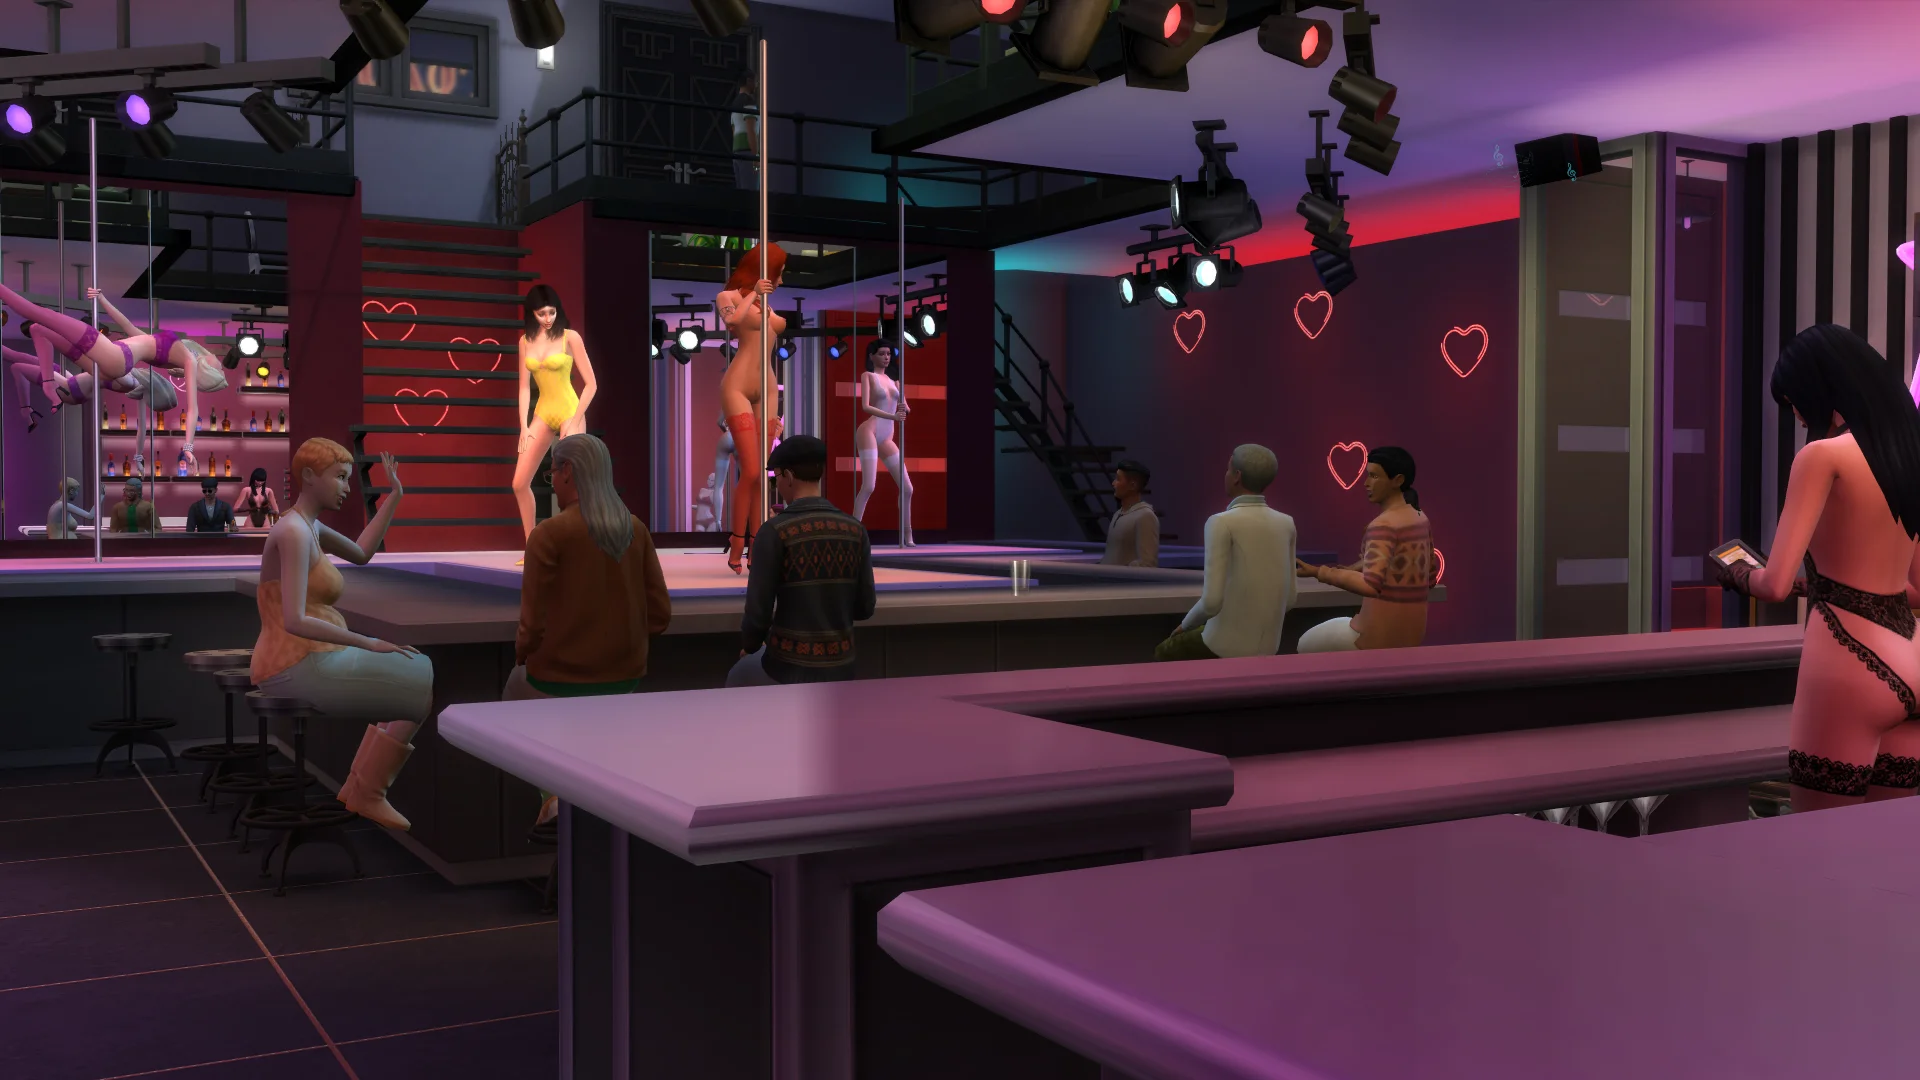 The sims 4 strip club